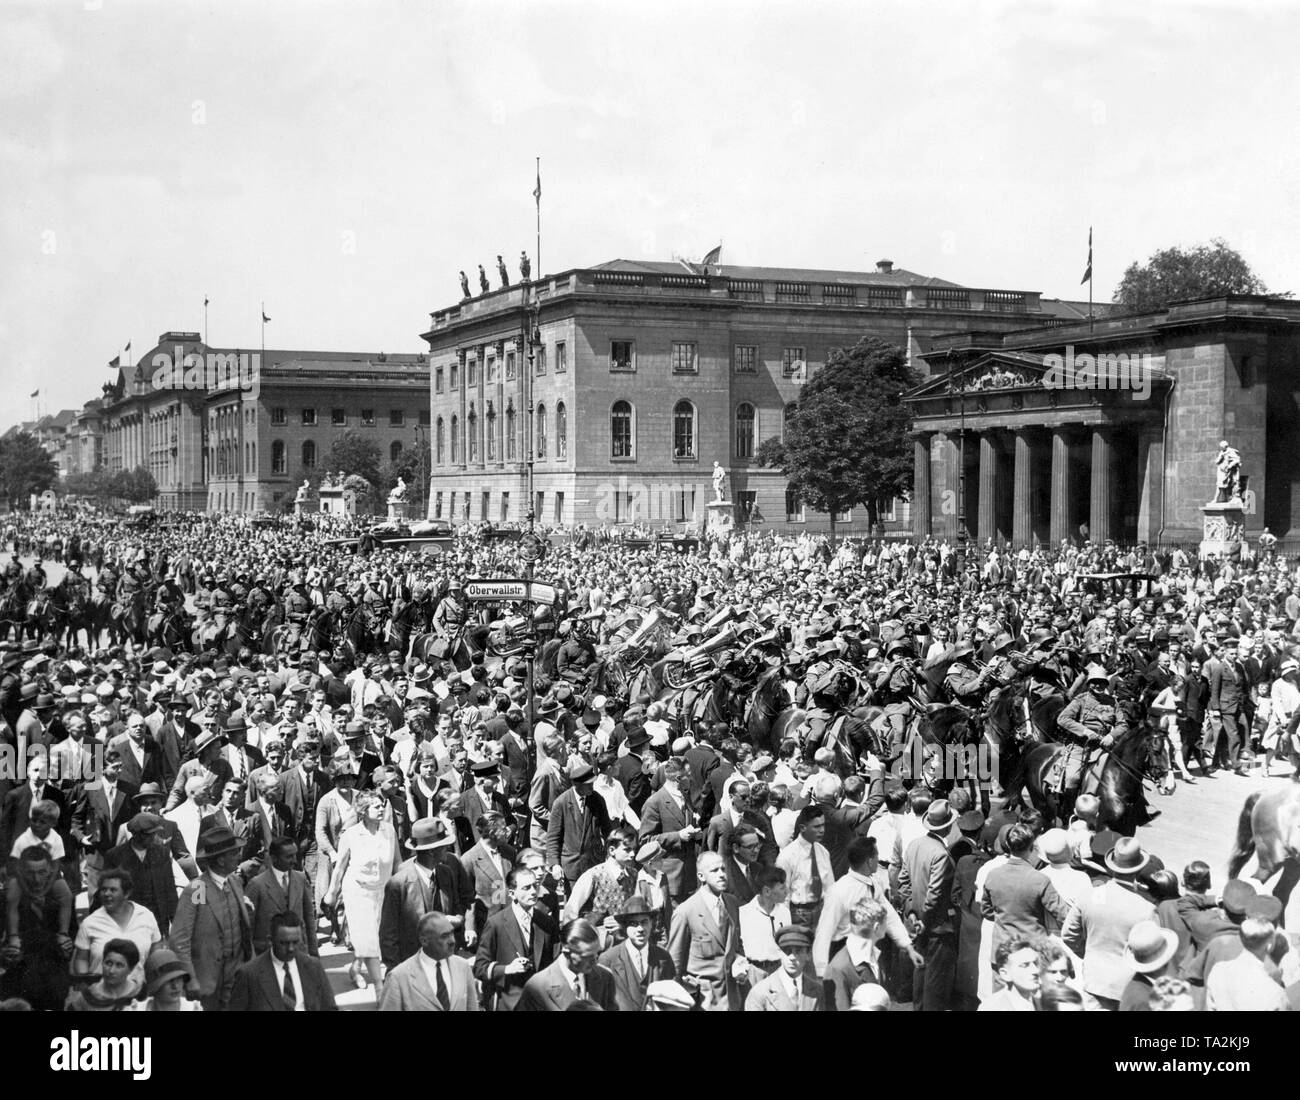 Eine Feier anlässlich der Alliierten Evakuierung der Rheinland statt. Die begeisterte Menge für die Parade deutsche Truppen gesäumt. Die Soldaten marschierten durch die Menge mit einem Brass Band über die Stadt. Stockfoto